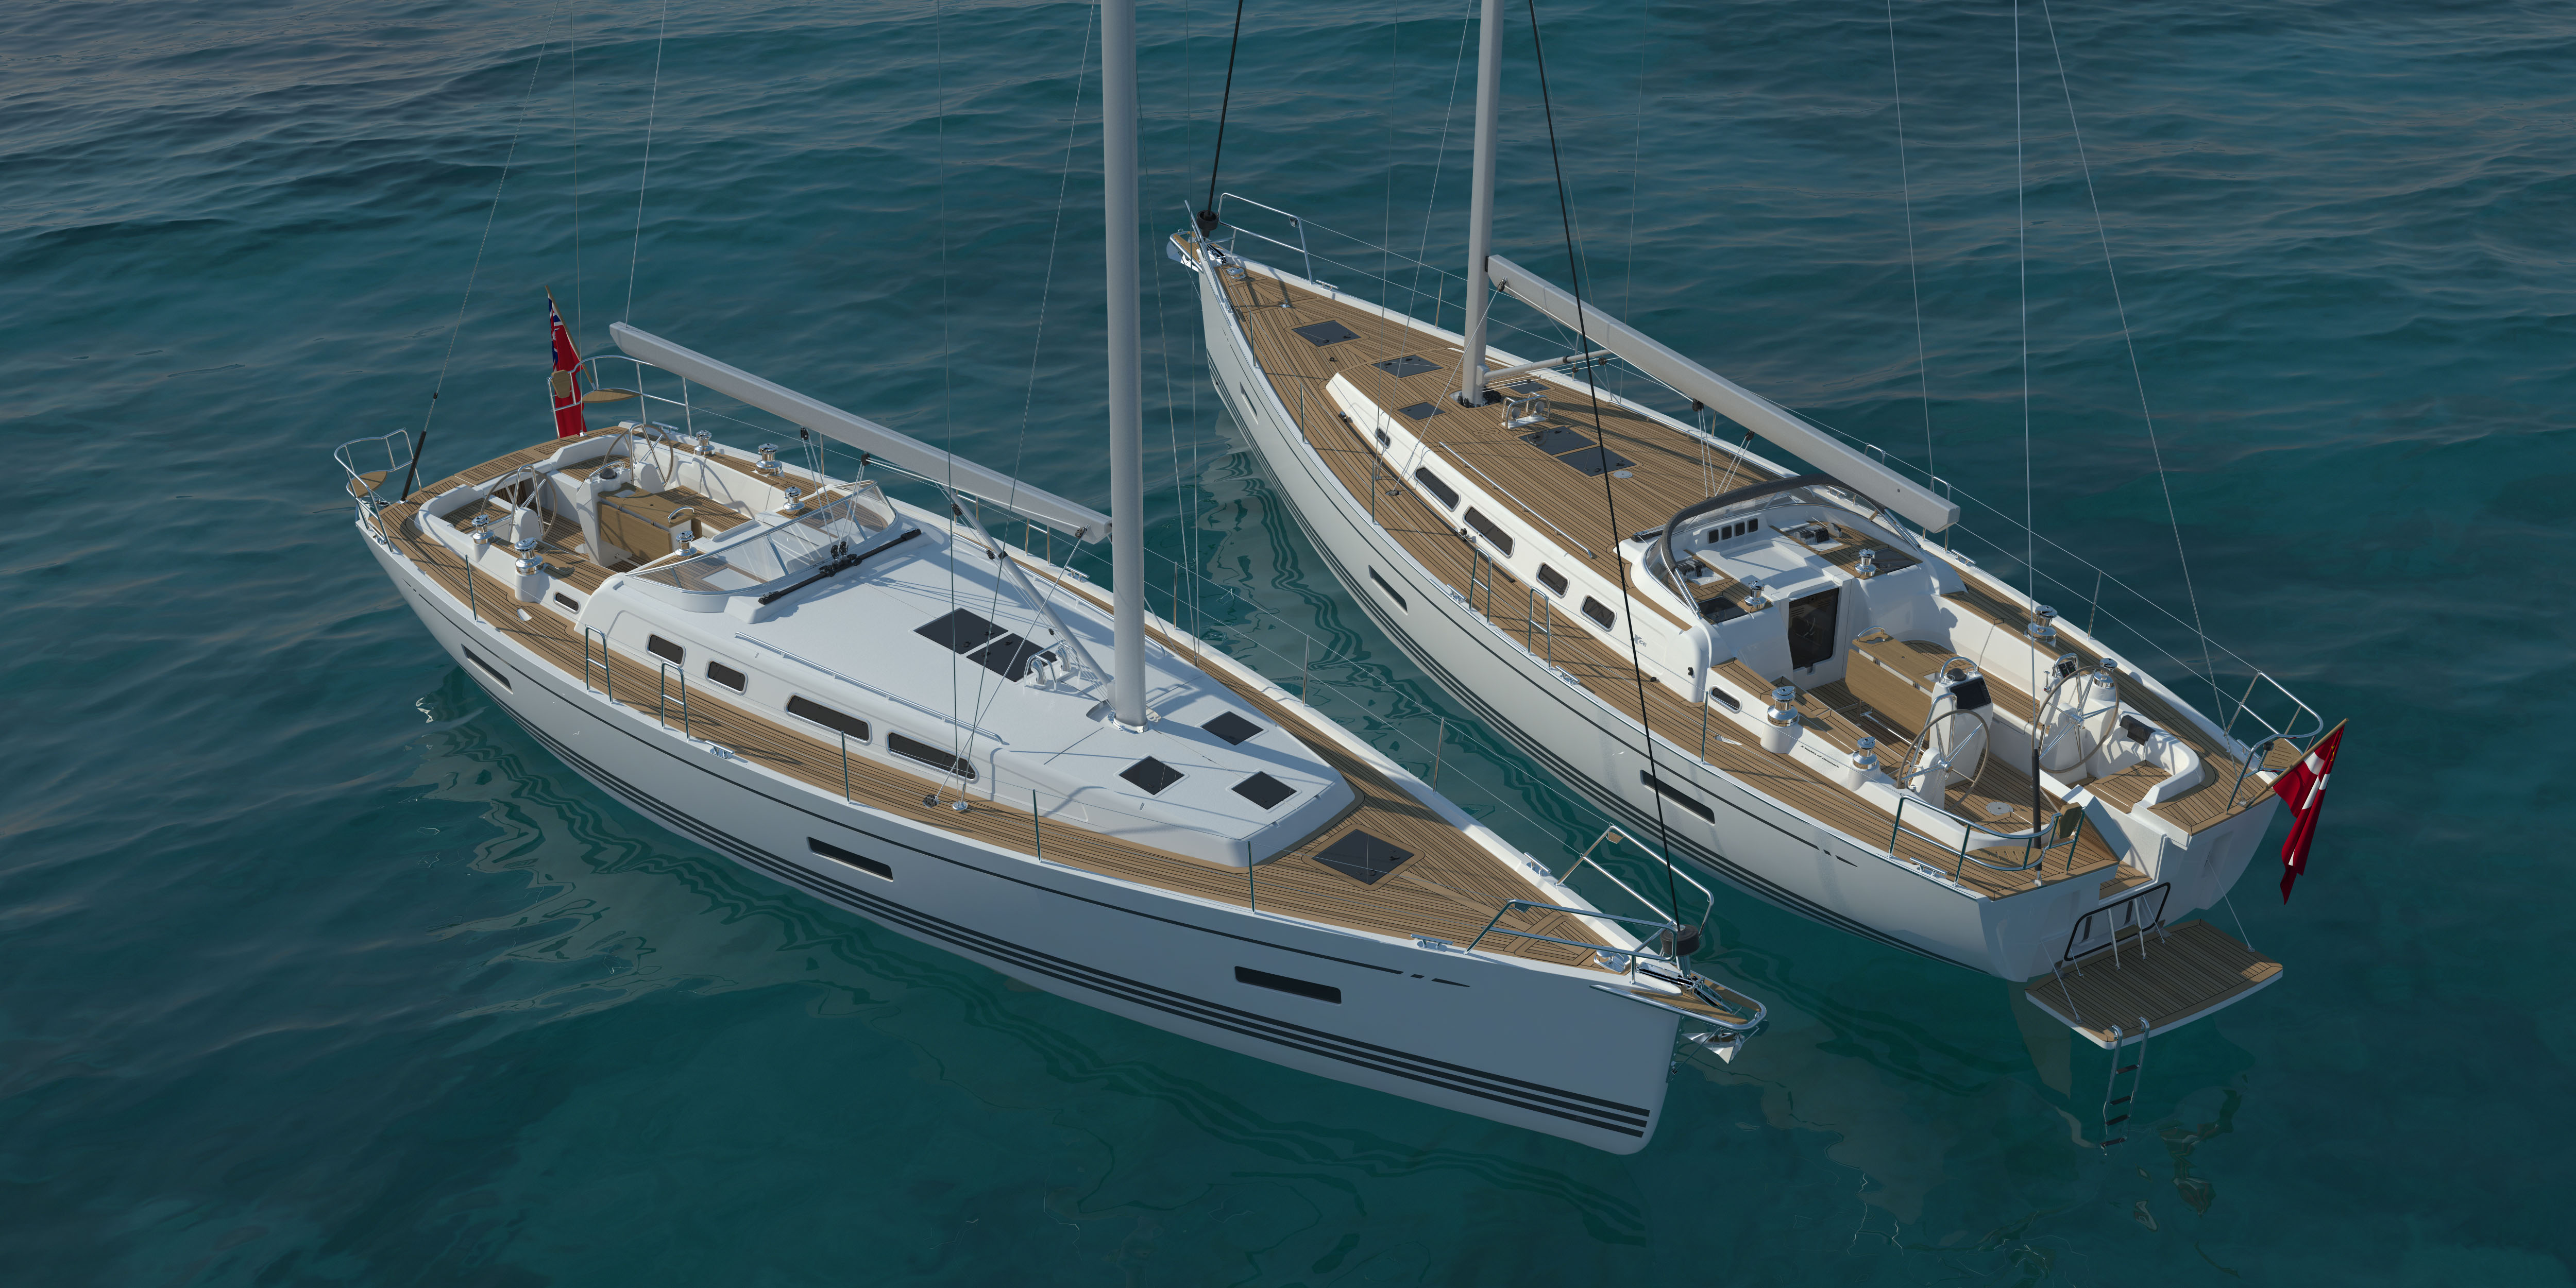 X-Yachts rinnova la sua linea Xc: i restyling dell’Xc 42 e l’Xc 45 saranno visibili ai Saloni del 2014-15